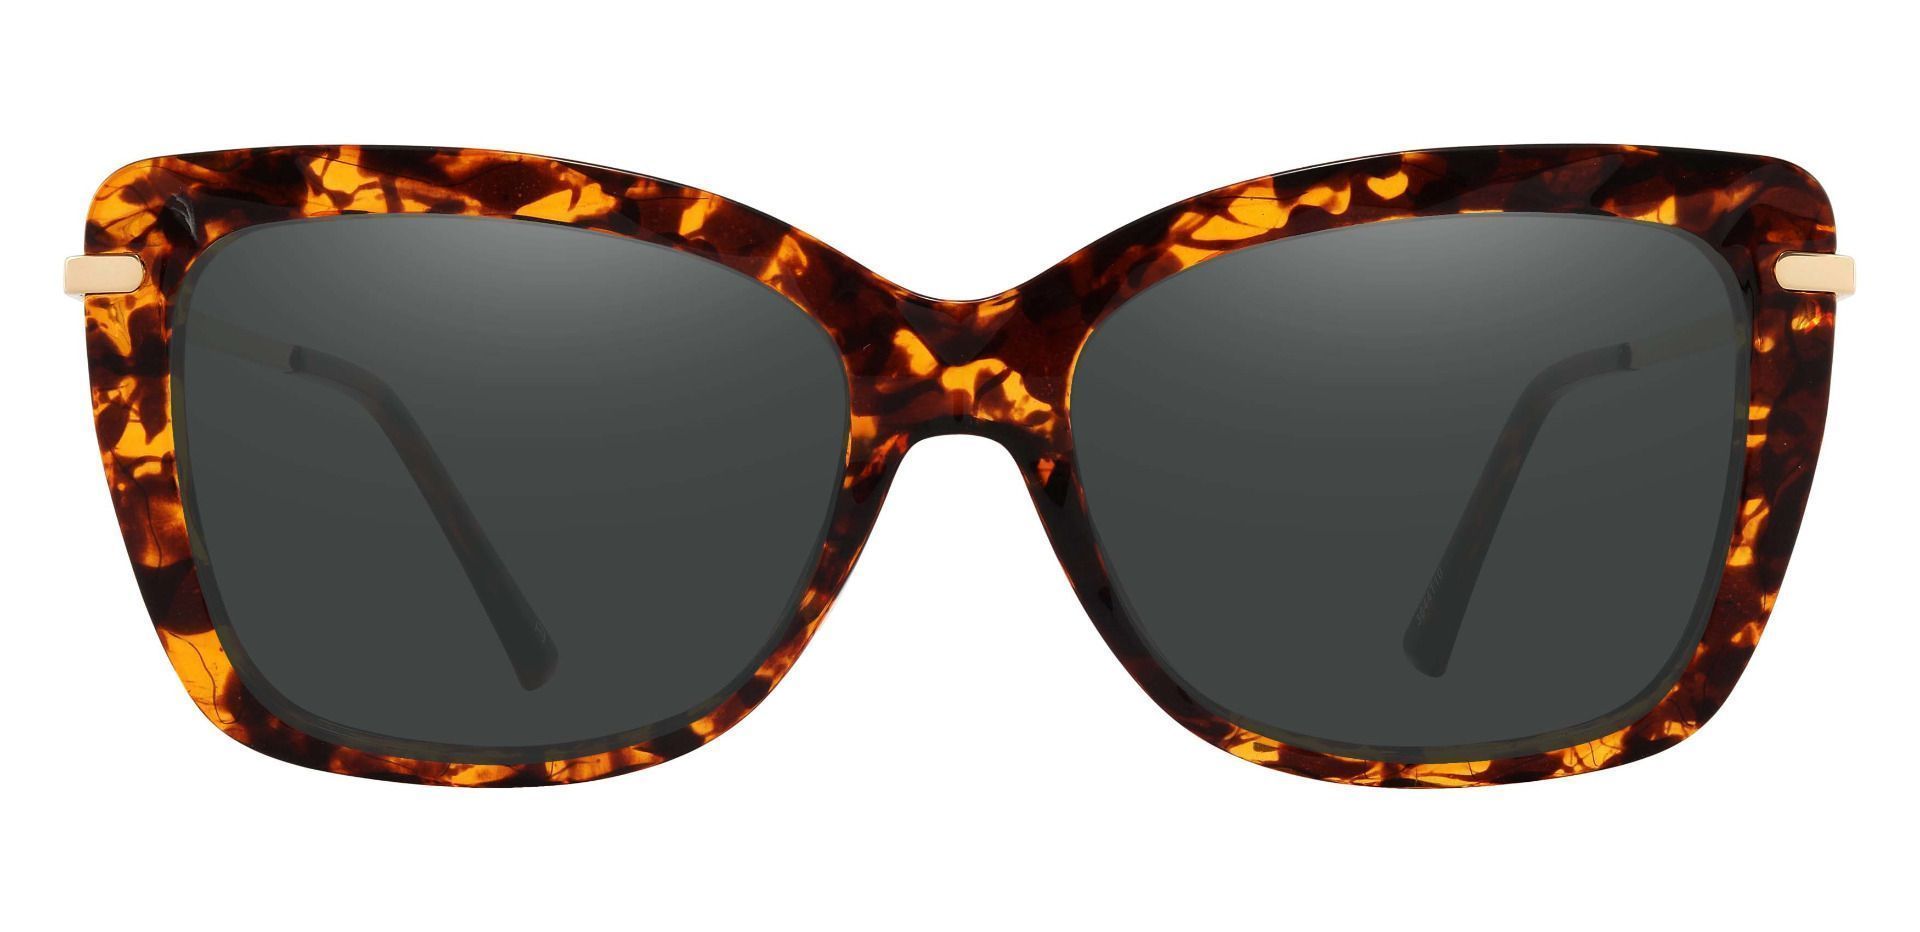 Shoshanna Rectangle Prescription Sunglasses - Tortoise Frame With Gray Lenses